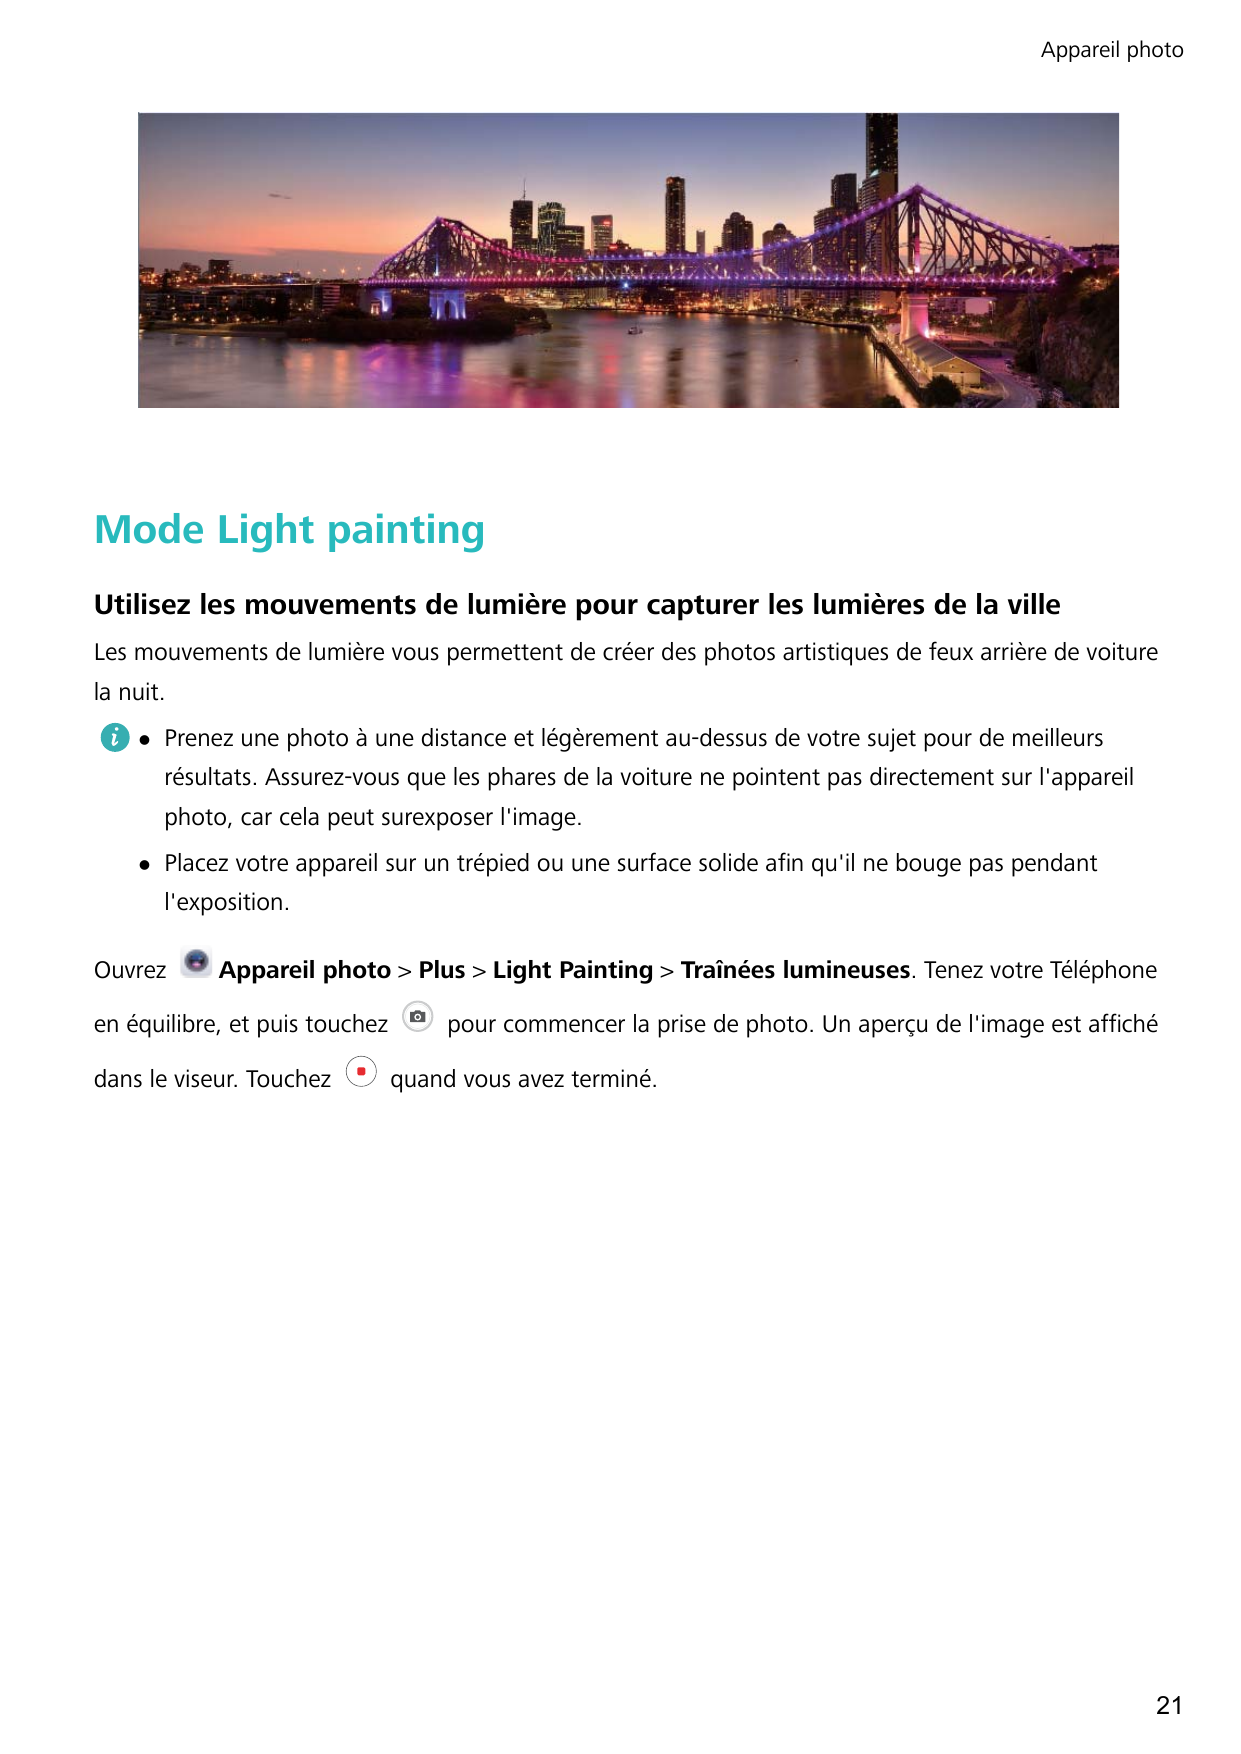 Appareil photoMode Light paintingUtilisez les mouvements de lumière pour capturer les lumières de la villeLes mouvements de lumi